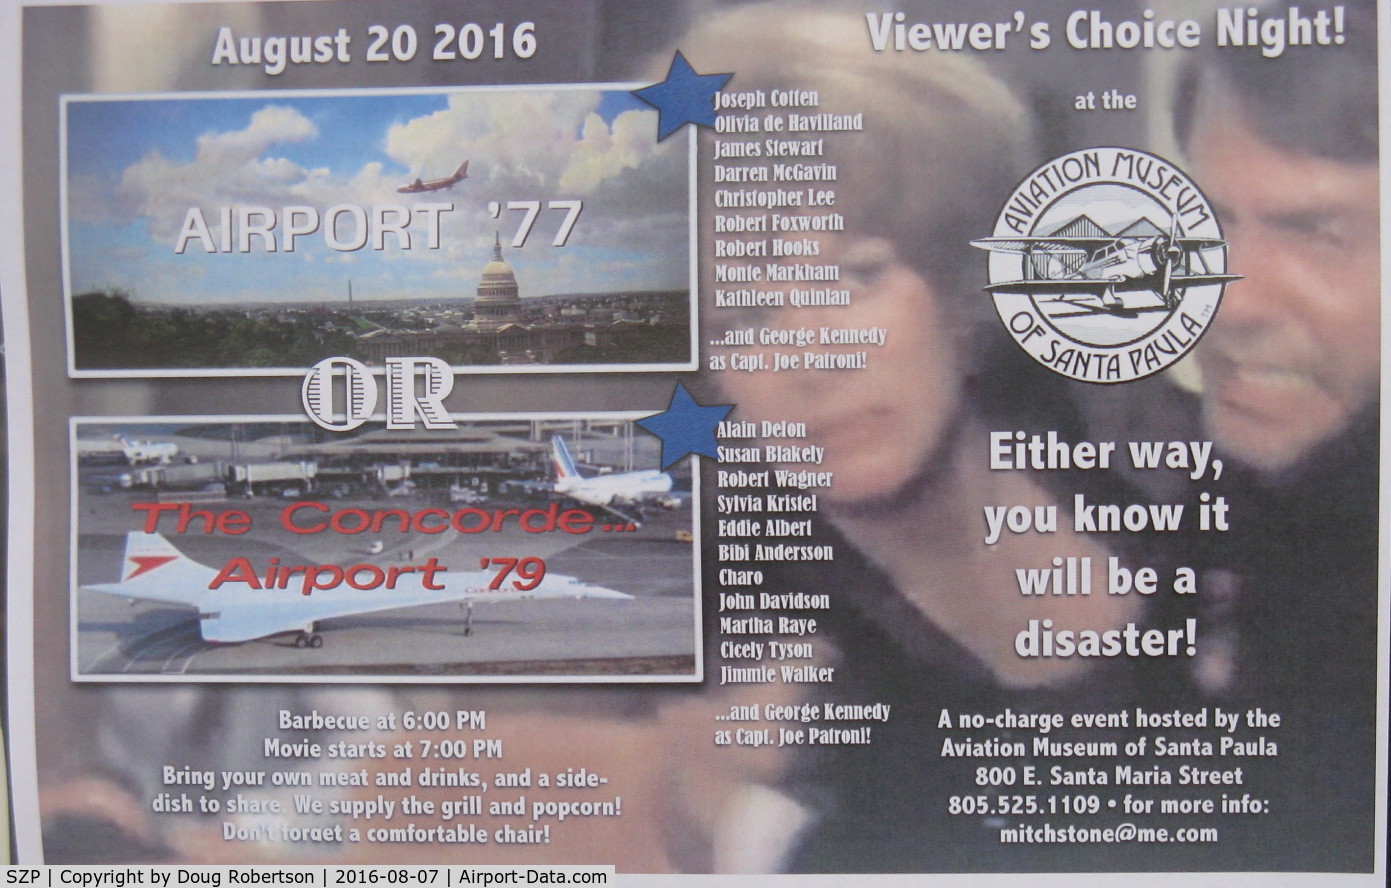 Santa Paula Airport (SZP) - Aviation Museum of Santa Paula Event-20 August 2016